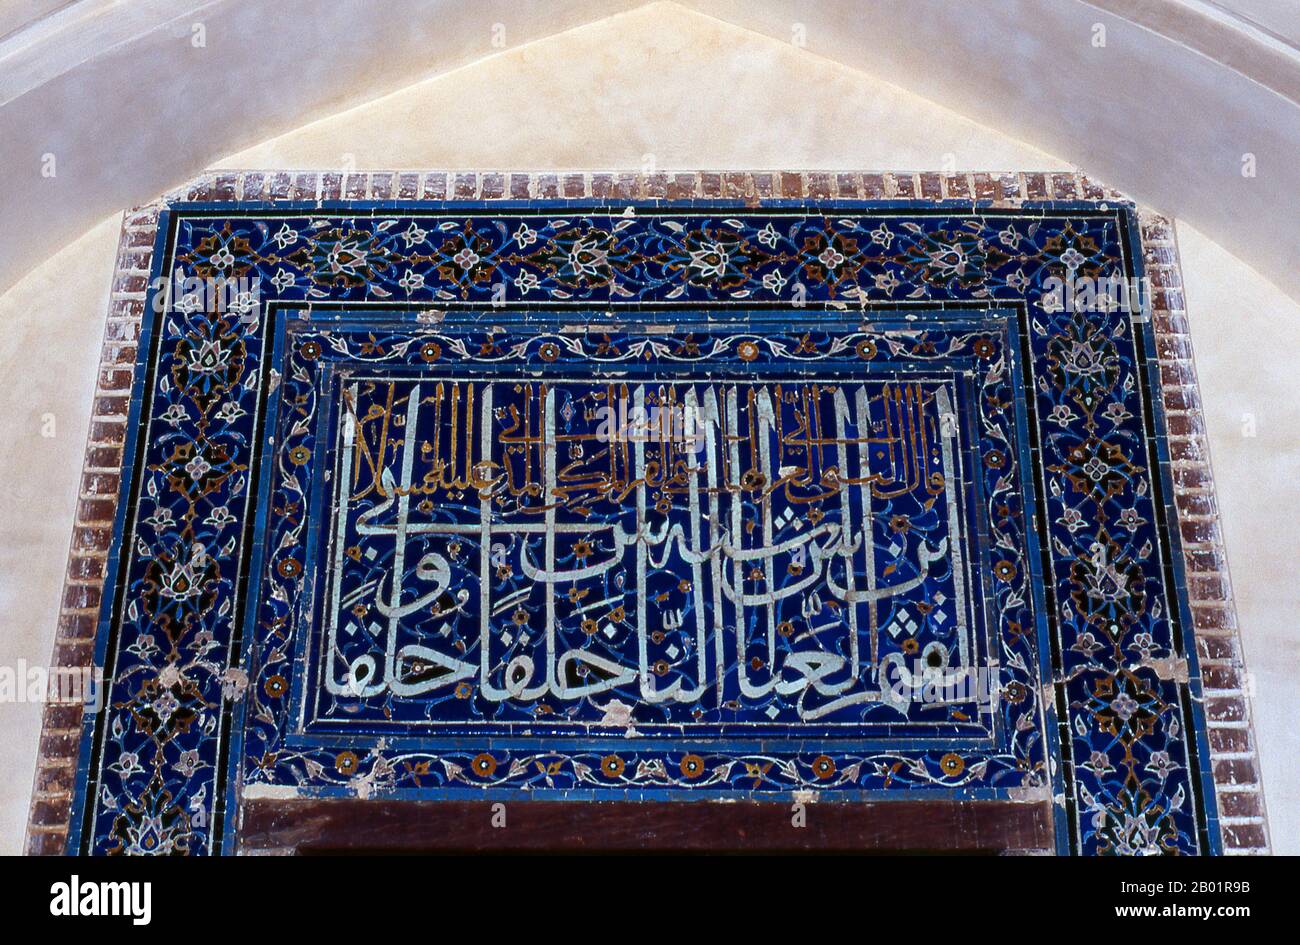 Usbekistan: Kalligraphisches Detail über einer Tür in Shah-i-Zinda, Samarkand. Shah-i-Zinda („der lebende König“) ist eine Nekropole im nordöstlichen Teil von Samarkand. Das Shah-i-Zinda Ensemble umfasst Mausoleen und andere rituelle Gebäude aus dem 9.-14. Und 19. Jahrhundert. Der Name Shah-i-Zinda steht im Zusammenhang mit der Legende, dass Kusam ibn Abbas, ein Cousin des Propheten Muhammad, hier begraben ist. Es wird angenommen, dass er mit der arabischen Invasion im 7. Jahrhundert nach Samarkand kam, um den Islam zu predigen. Populäre Legenden sagen, dass er von zoroastrischen Feueranbetern wegen seines Glaubens enthauptet wurde. Stockfoto